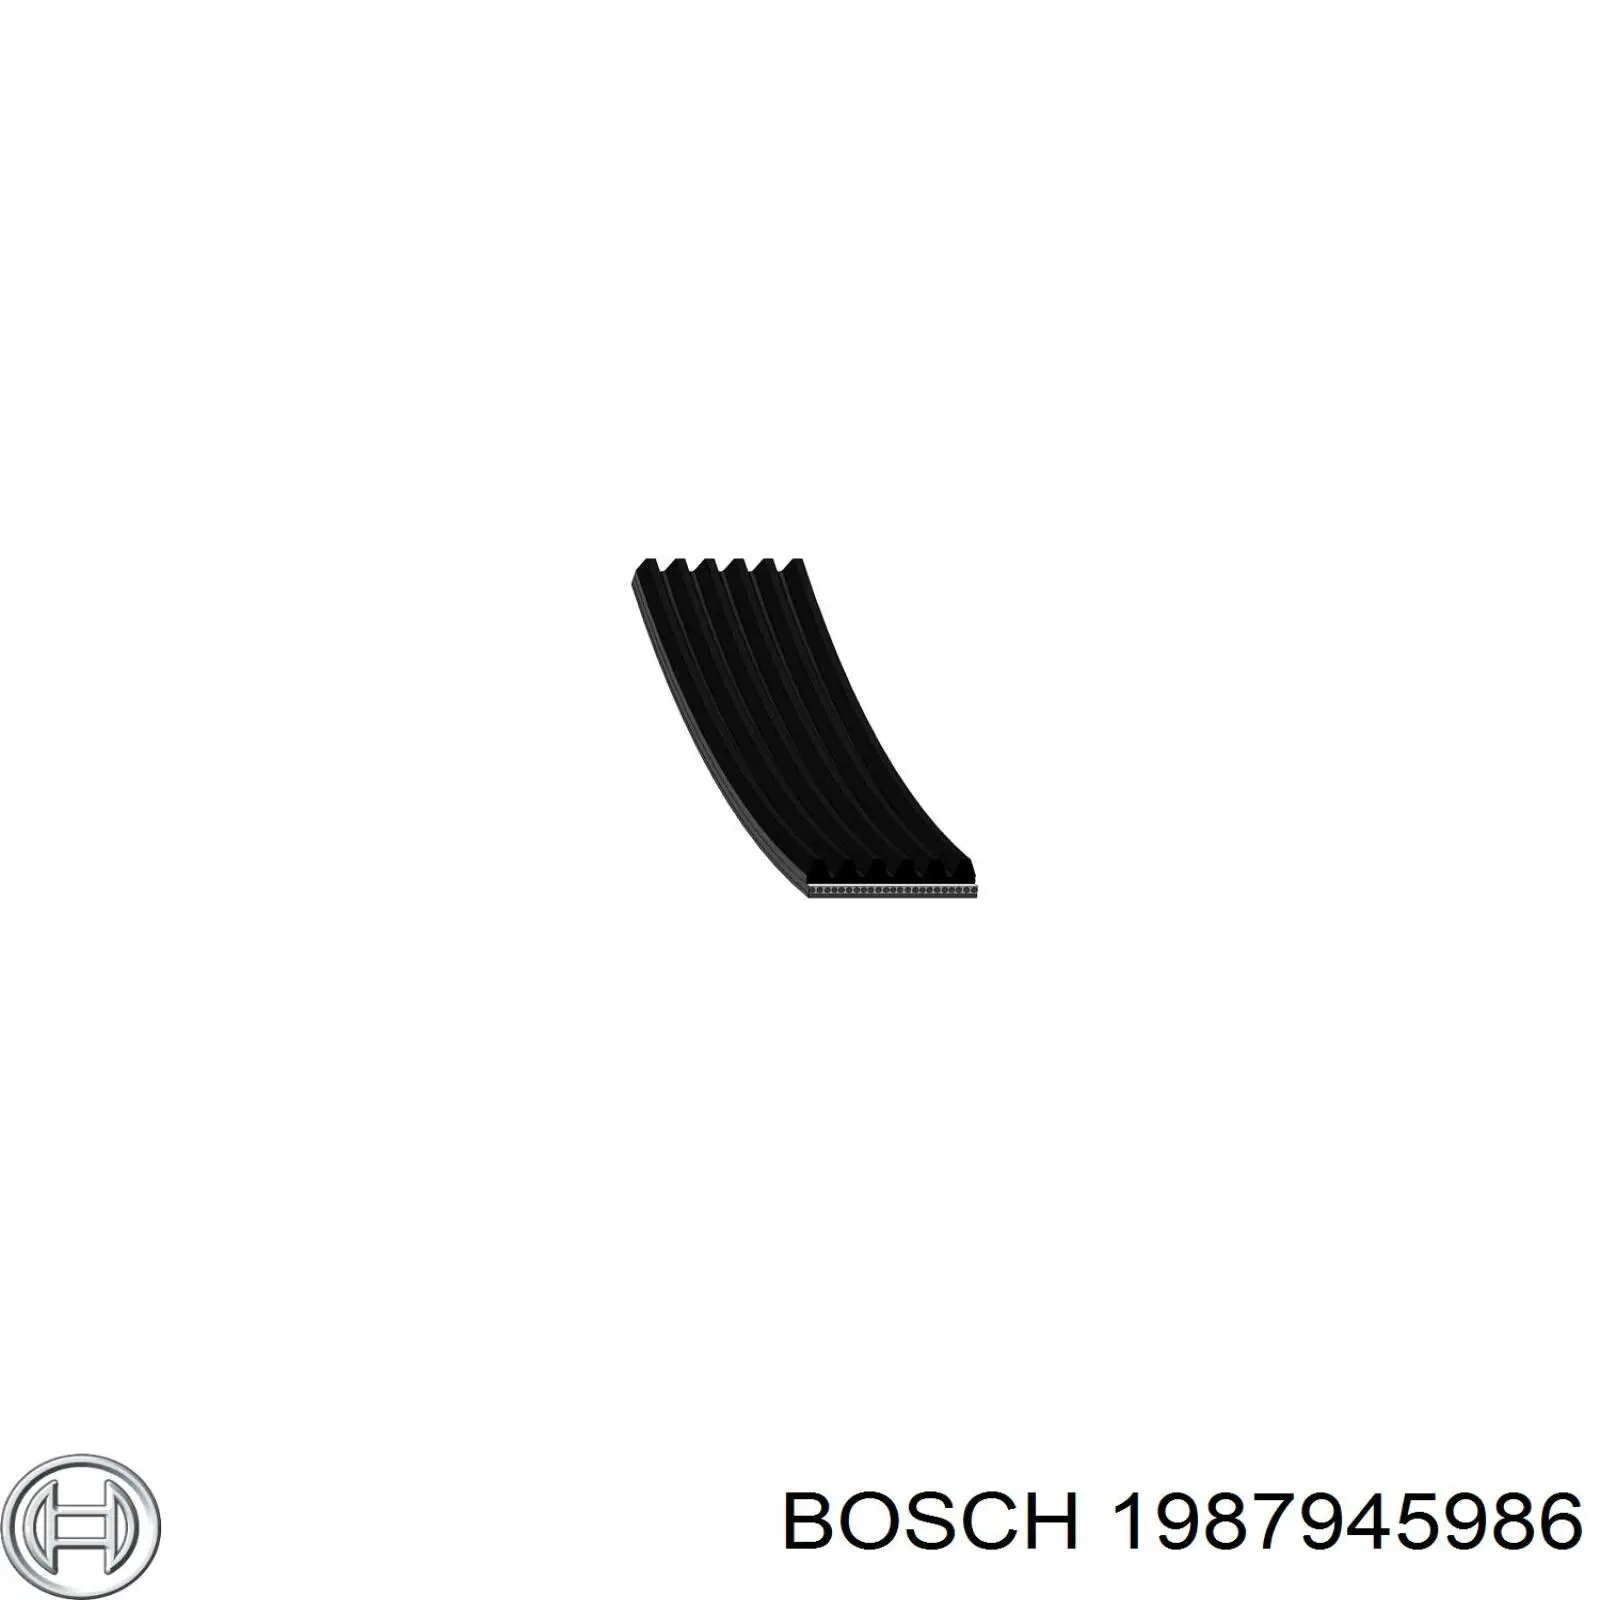 1987945986 Bosch correia dos conjuntos de transmissão